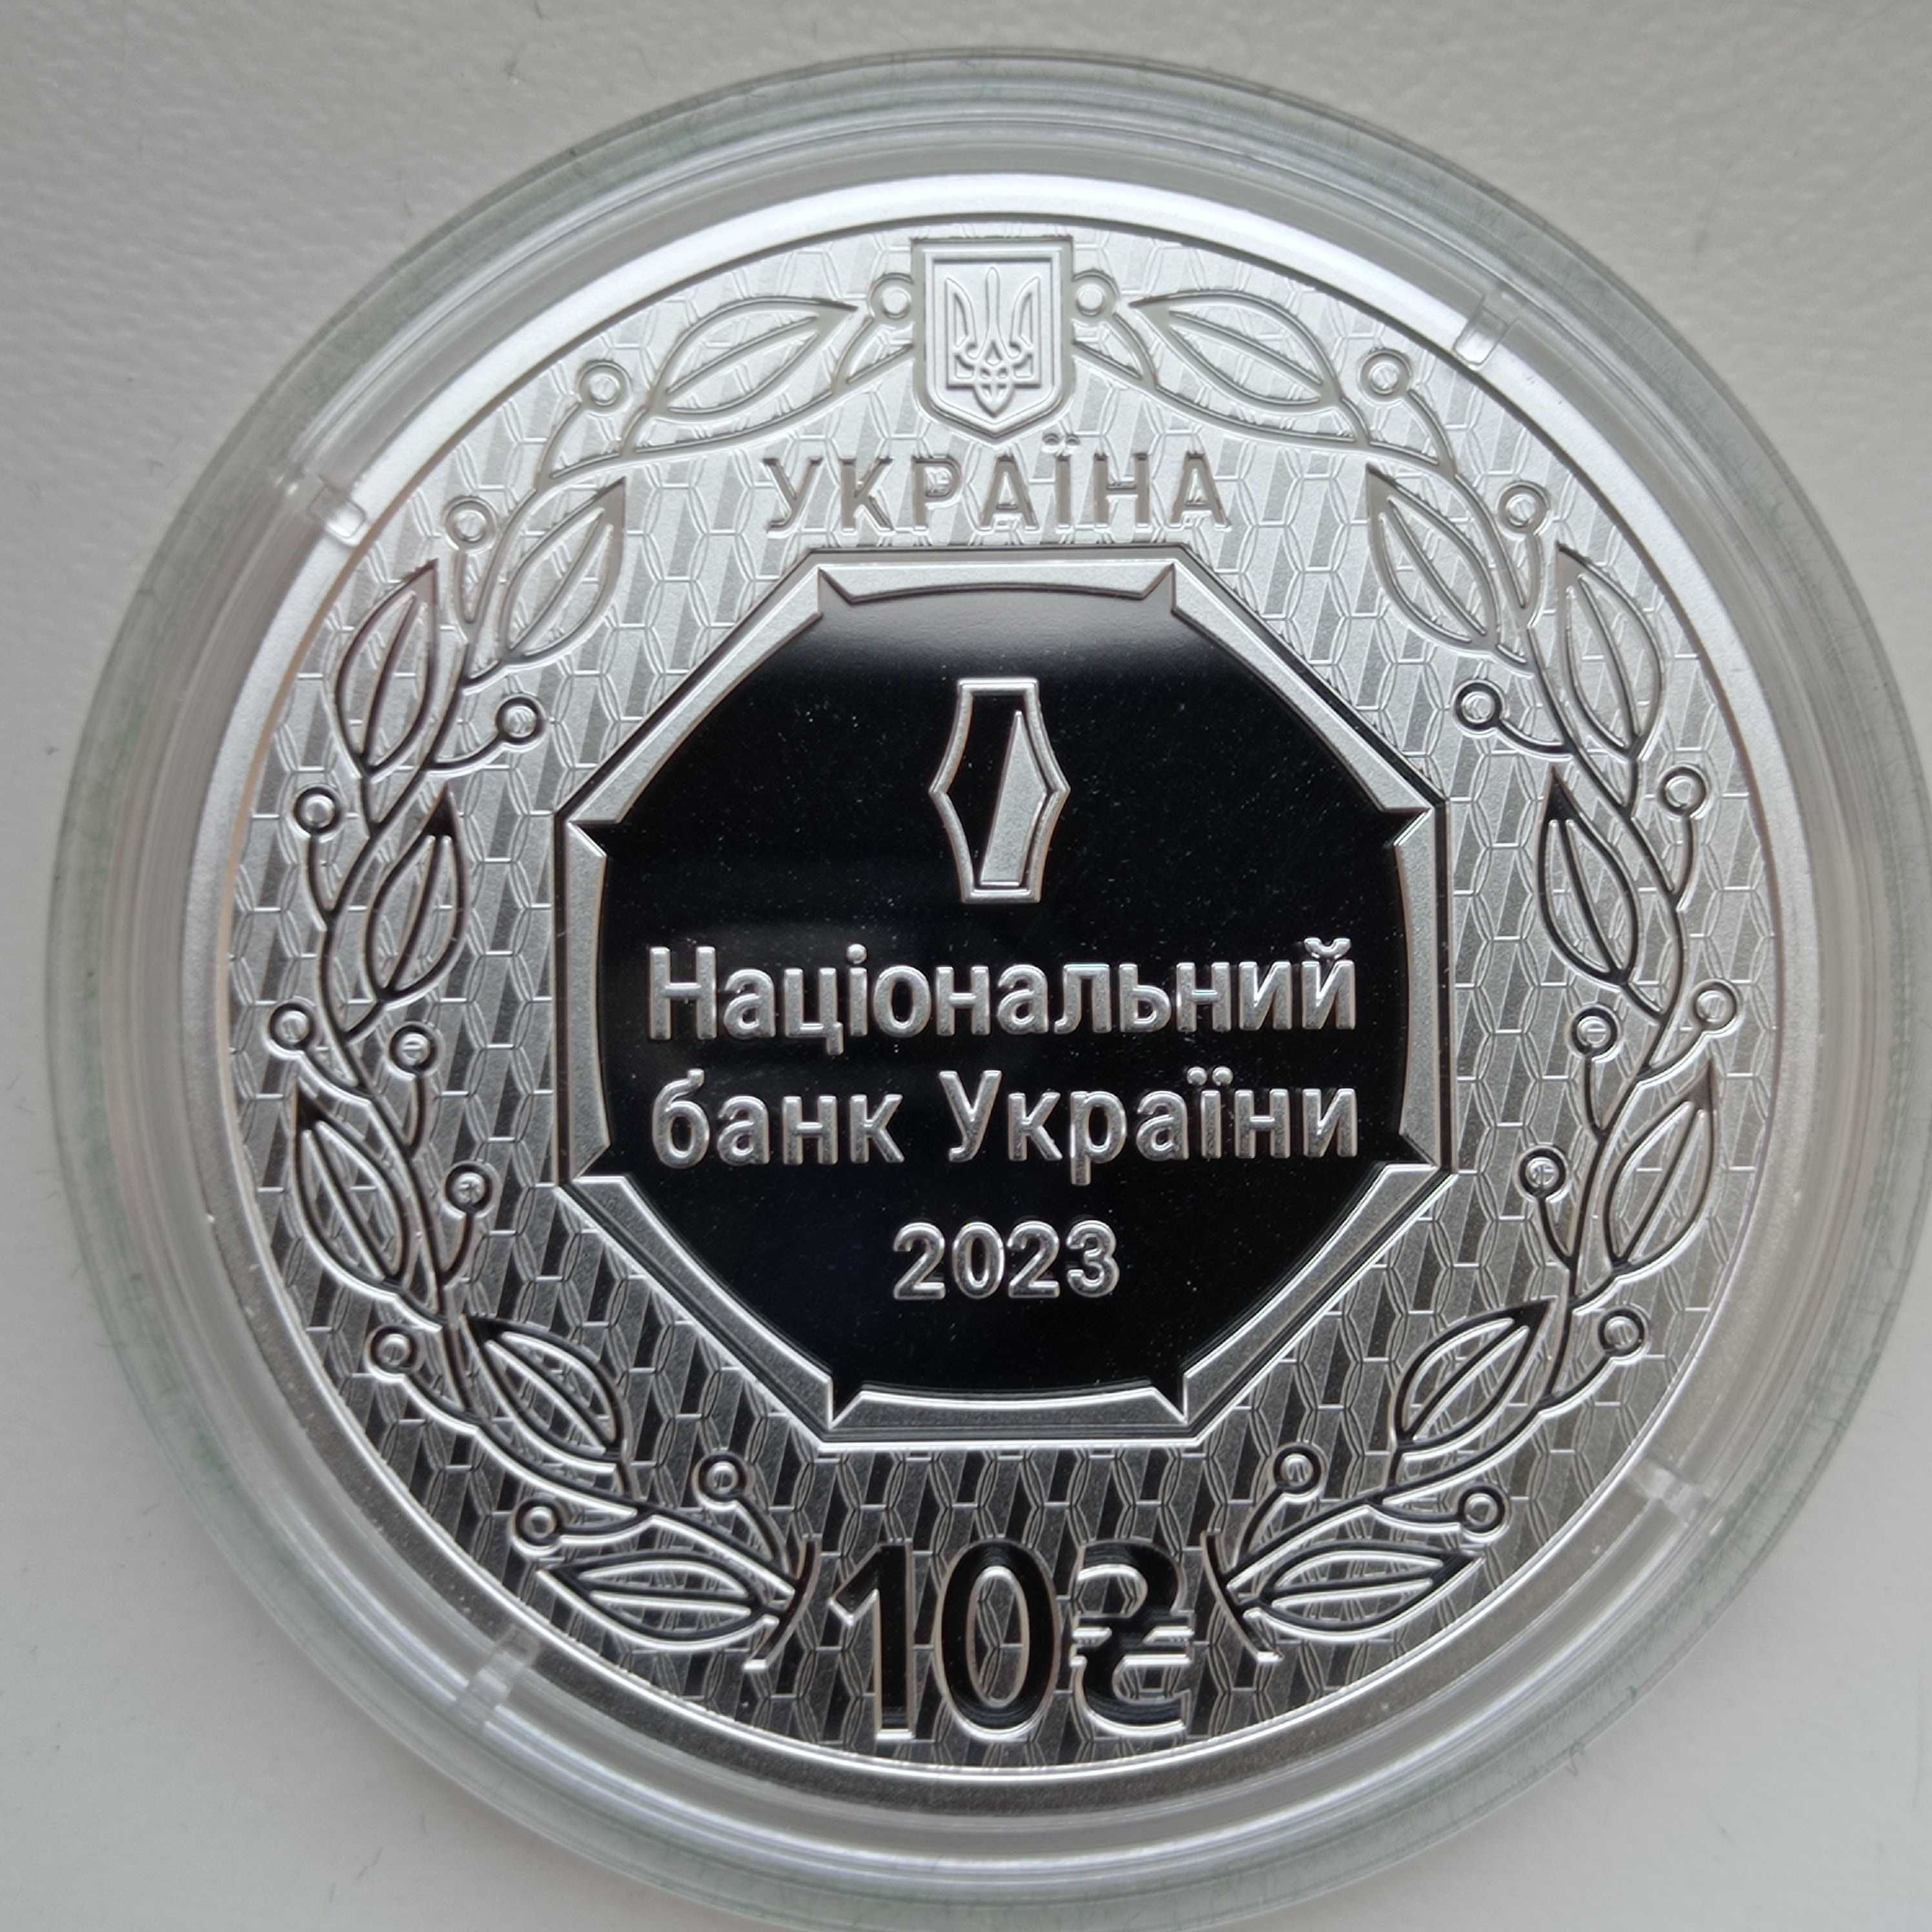 10 гривень 2023 года из серебра Украина, Архистратиг Михаил.